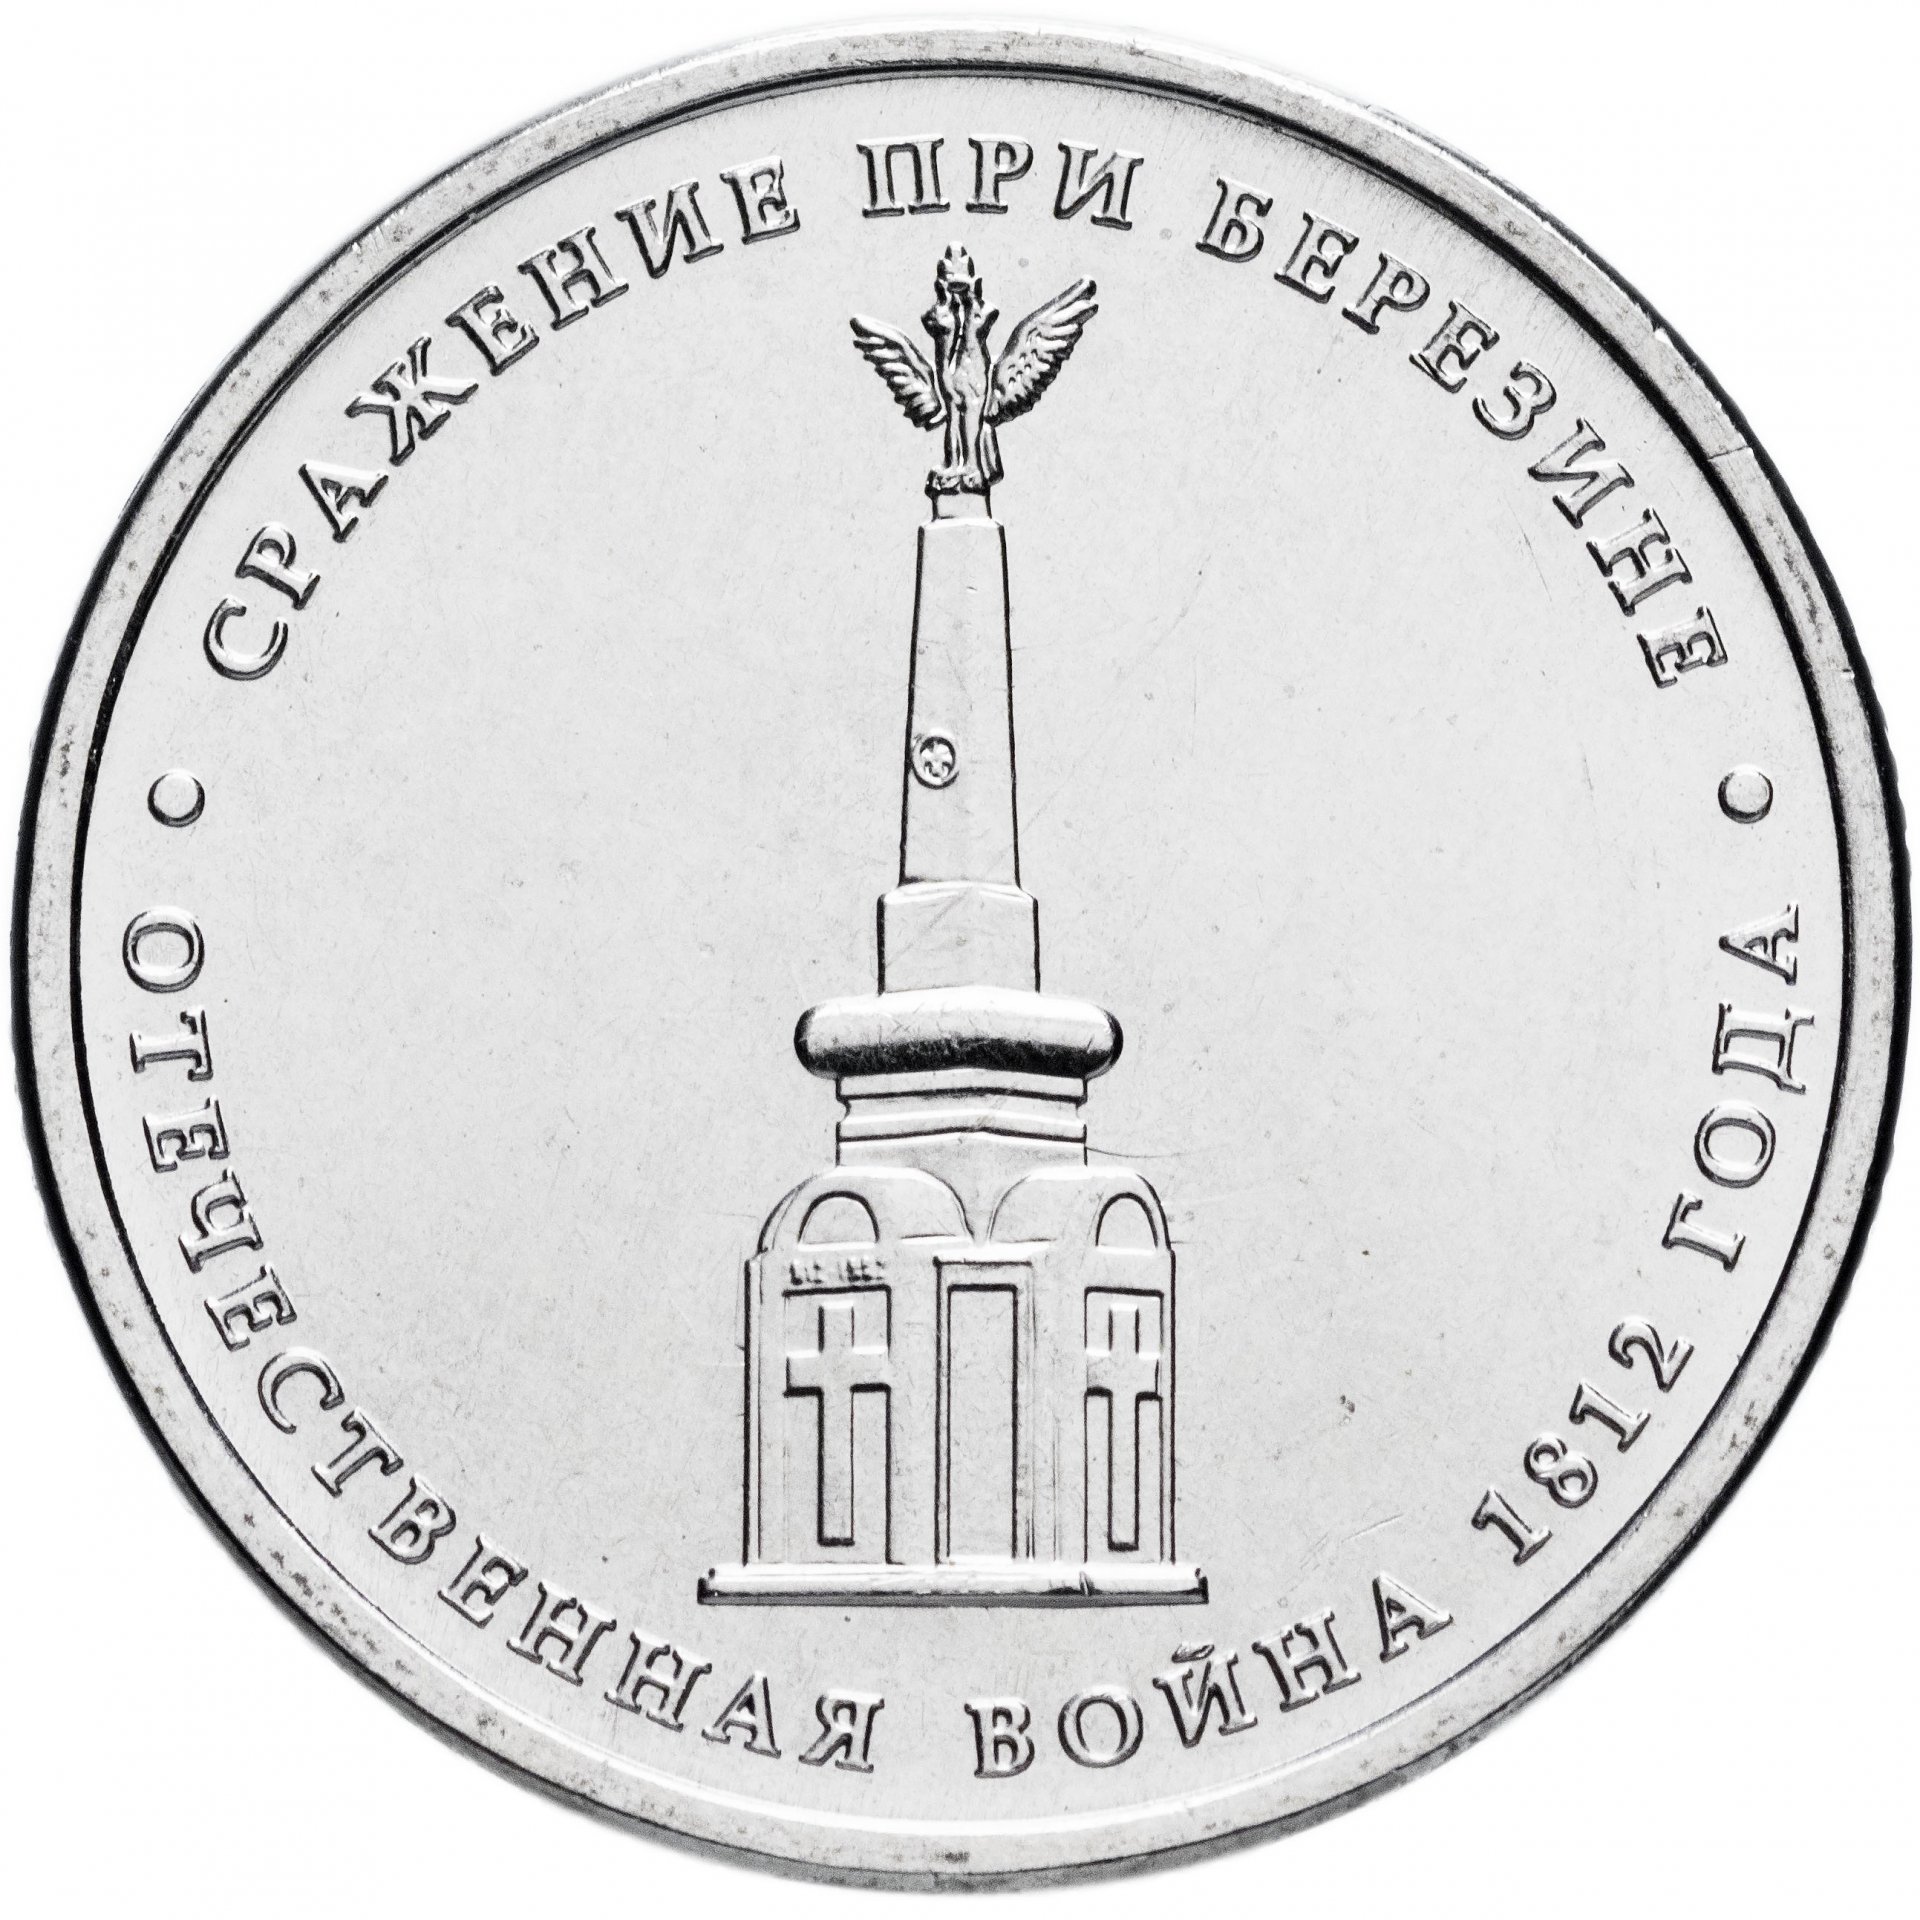 Цена 5 рублей со. 5 Рублей сражение при Березине. 5 Рублей 2012 сражение при Березине. Монета сражение при Березине. 5 Рублей сражение при Березине 2012 монета.